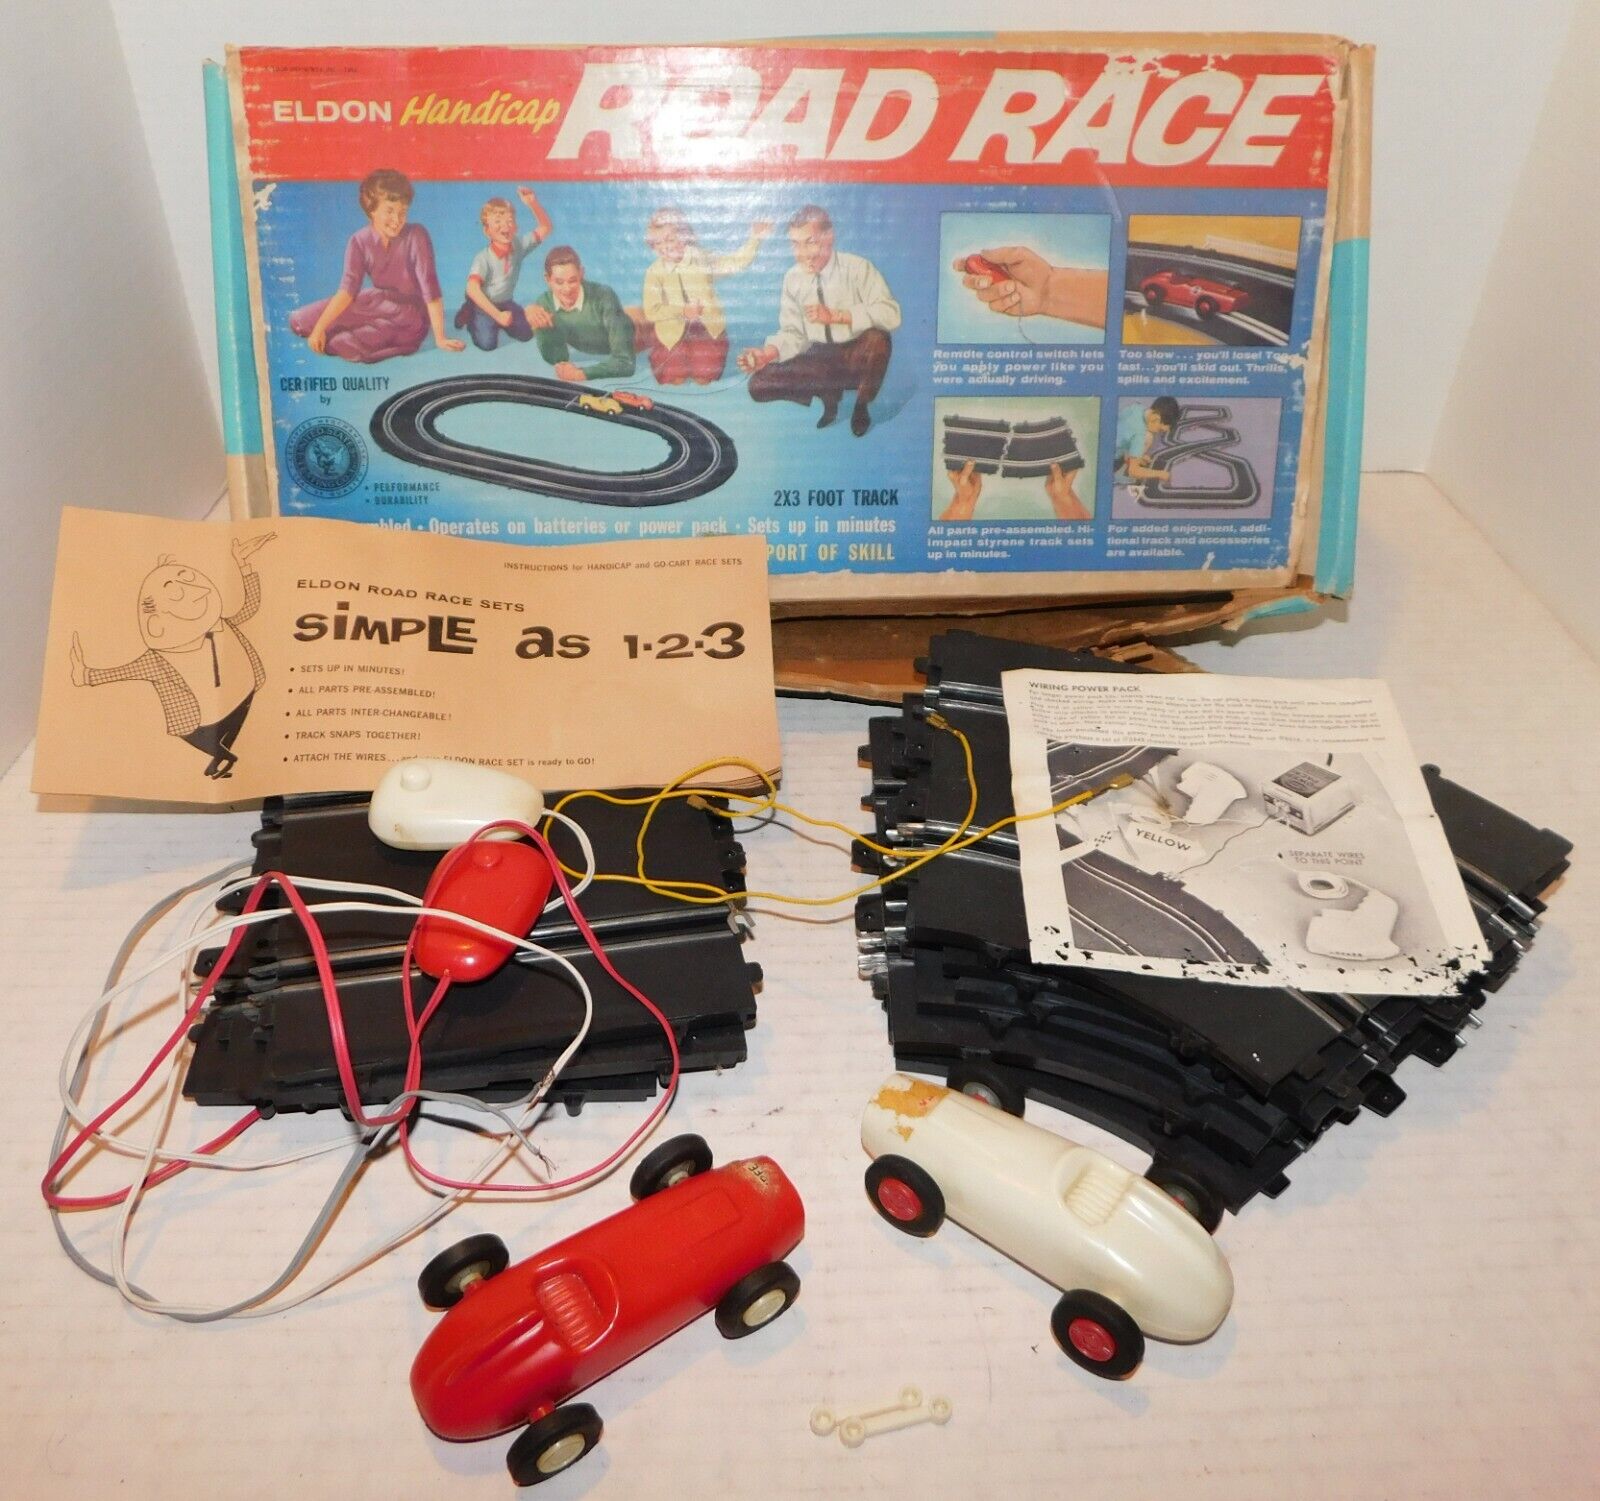 Vintage 1962 Eldon Handicap Road Race Slot Car Set with original Box